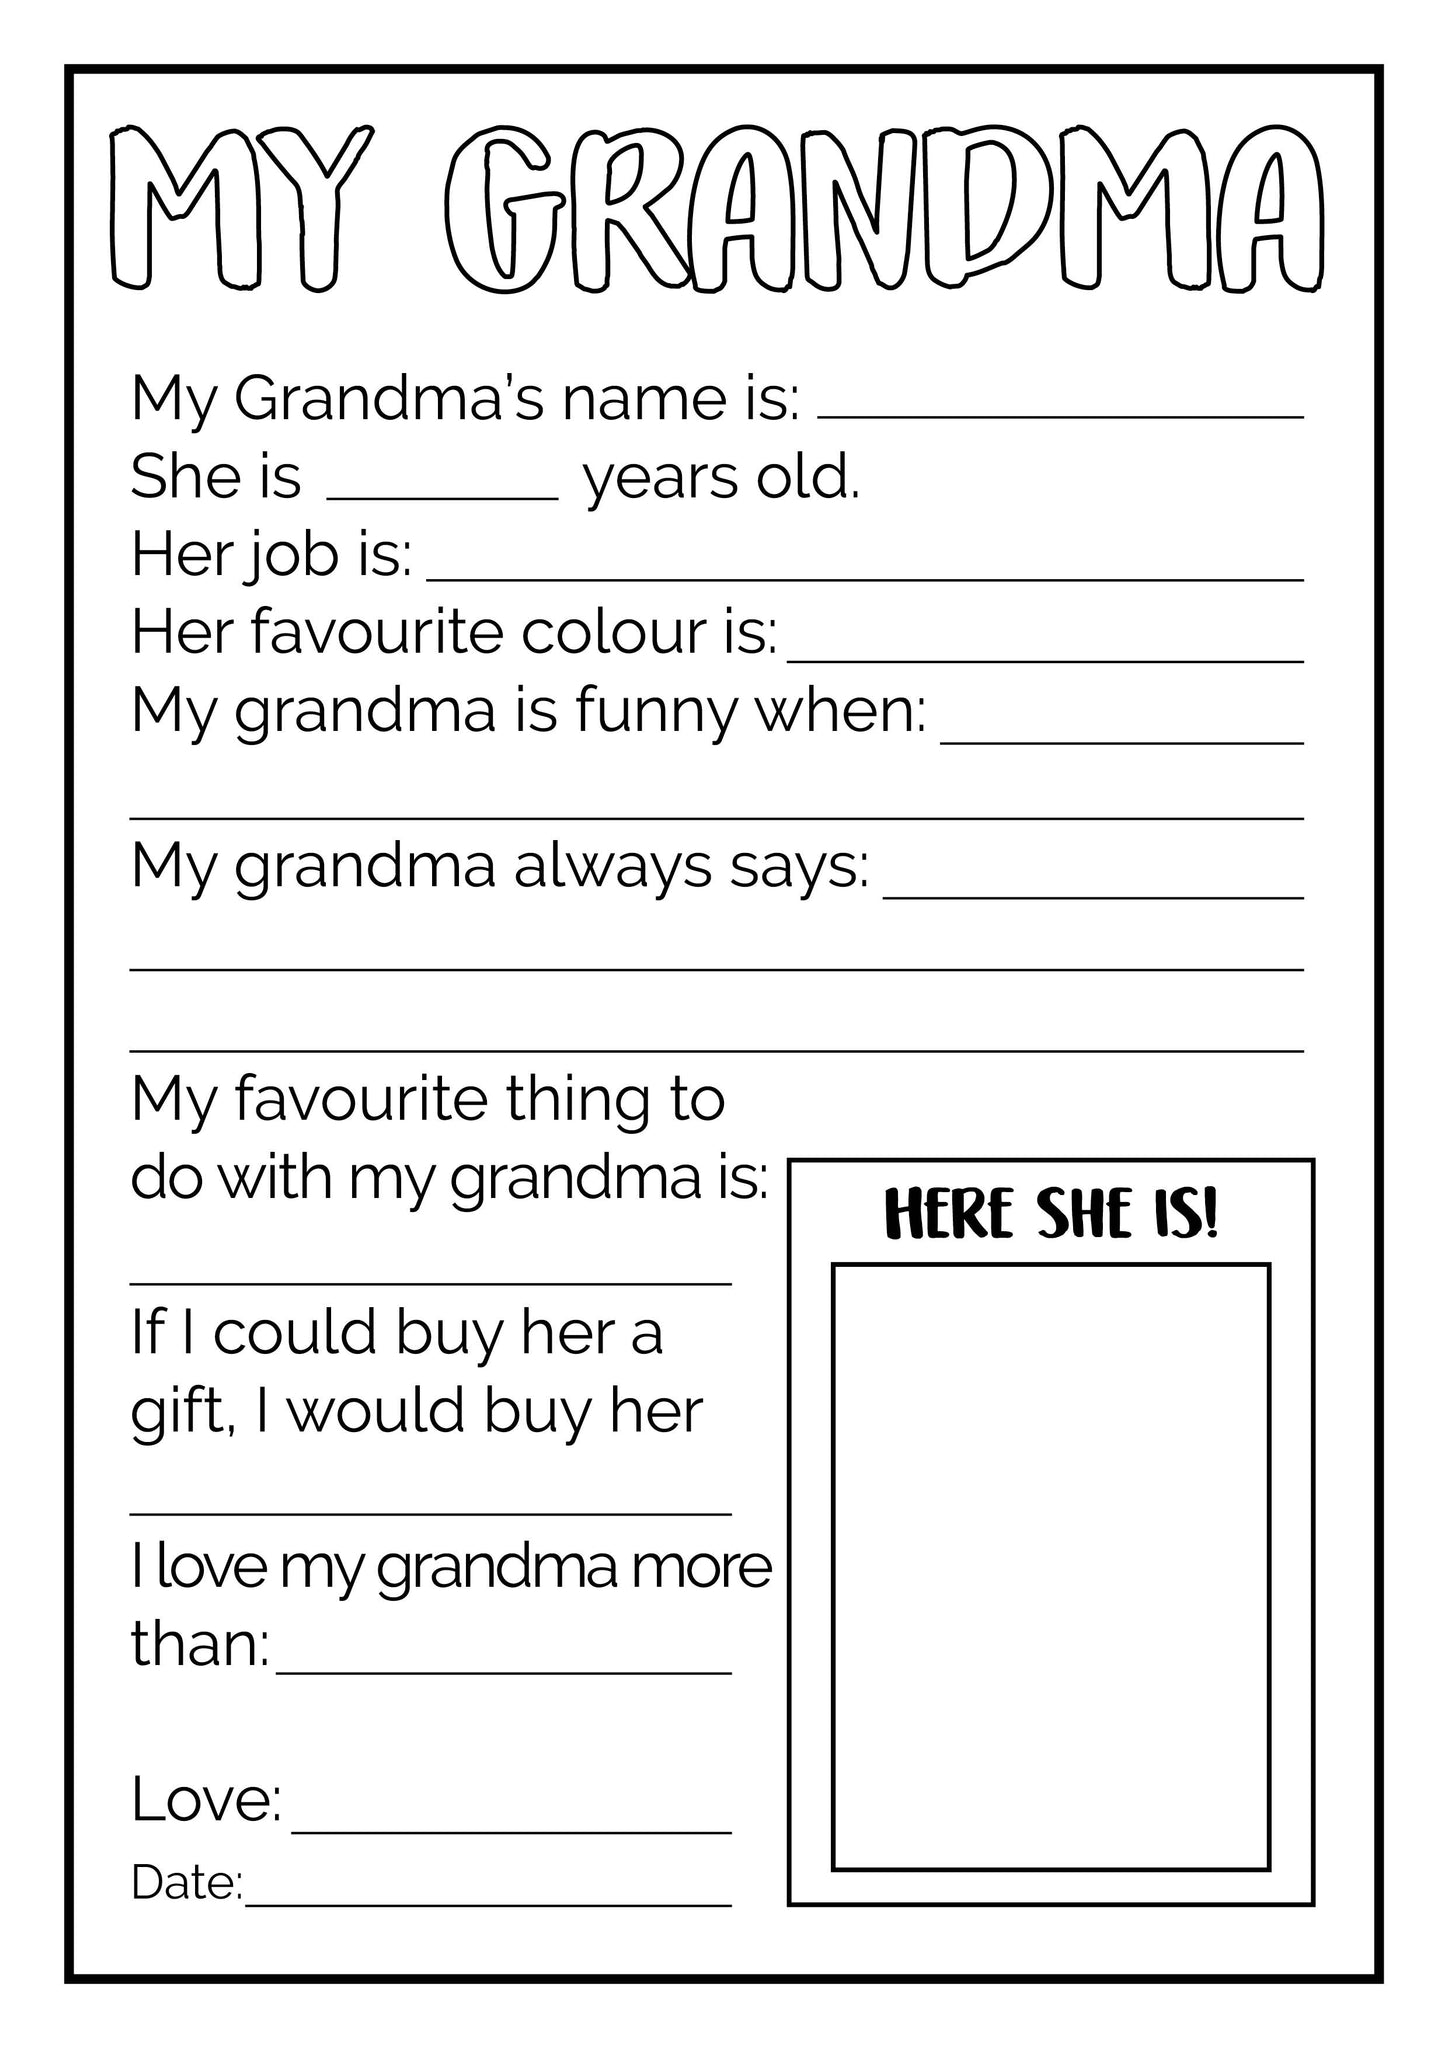 All About My Grandma Free Printable Printable Templates